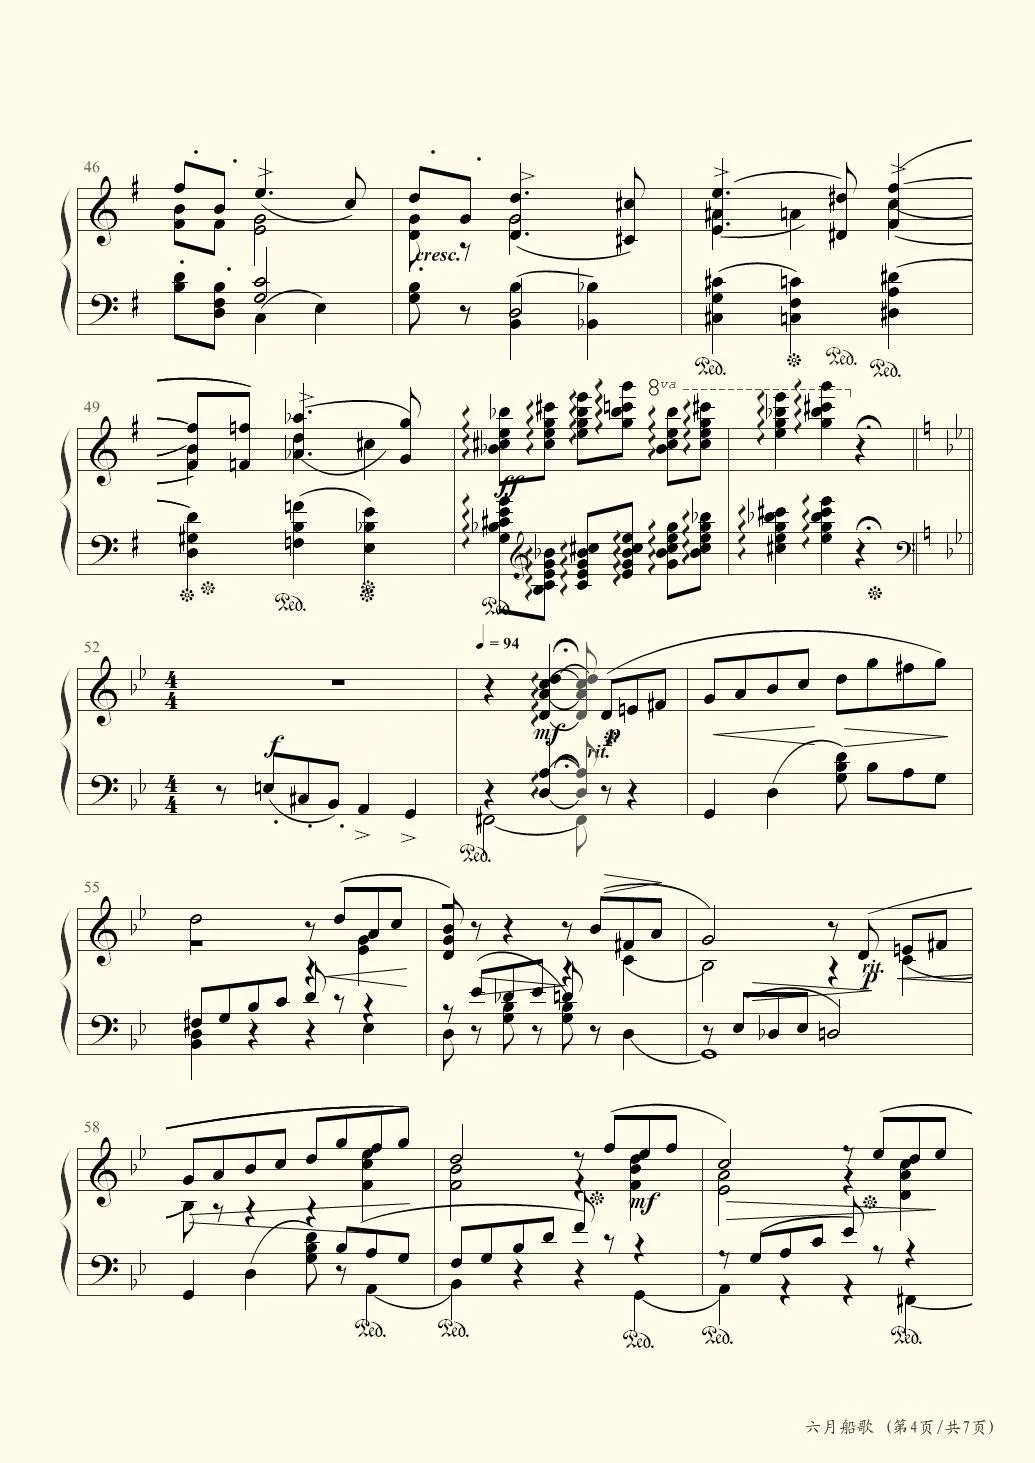 六月船歌钢琴谱-彼得·伊里奇·柴可夫斯基钢琴谱-环球钢琴网